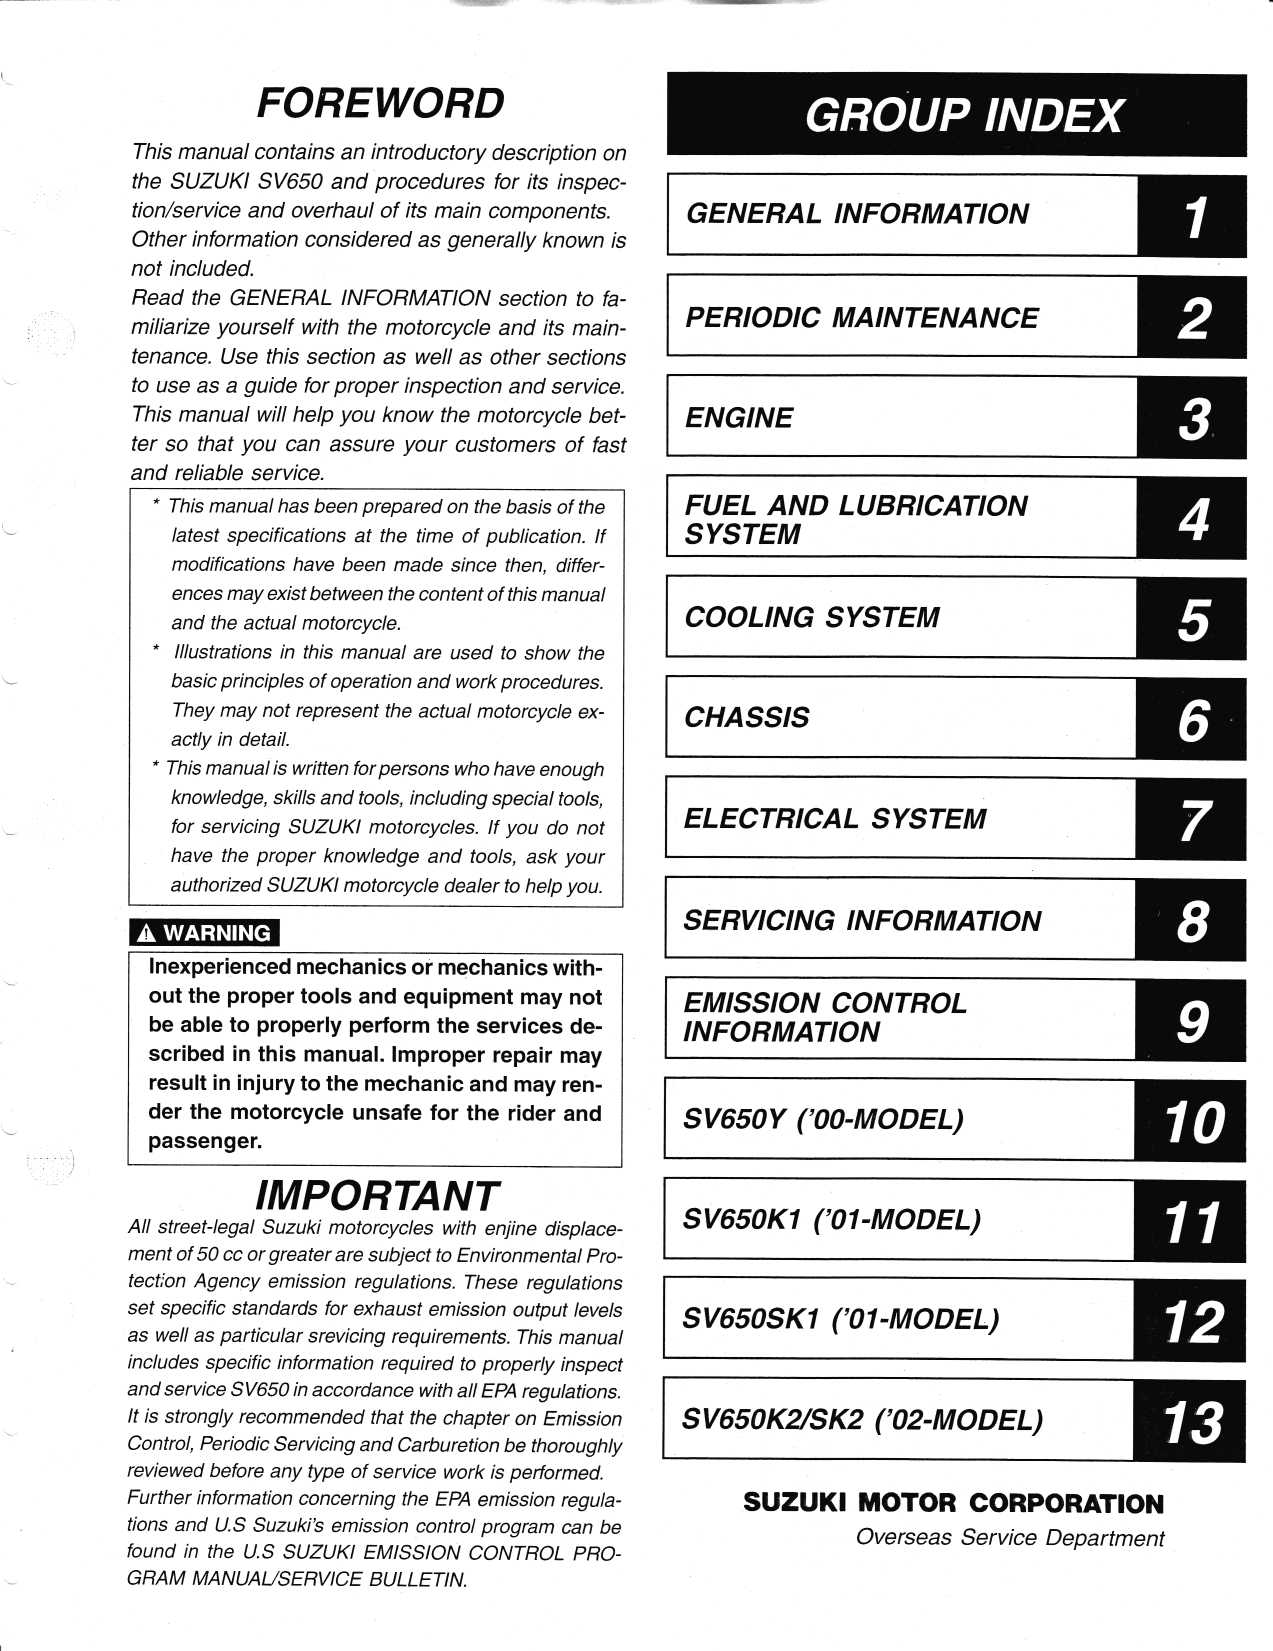 1999-2002 Suzuki SV650/S repair manual Preview image 2